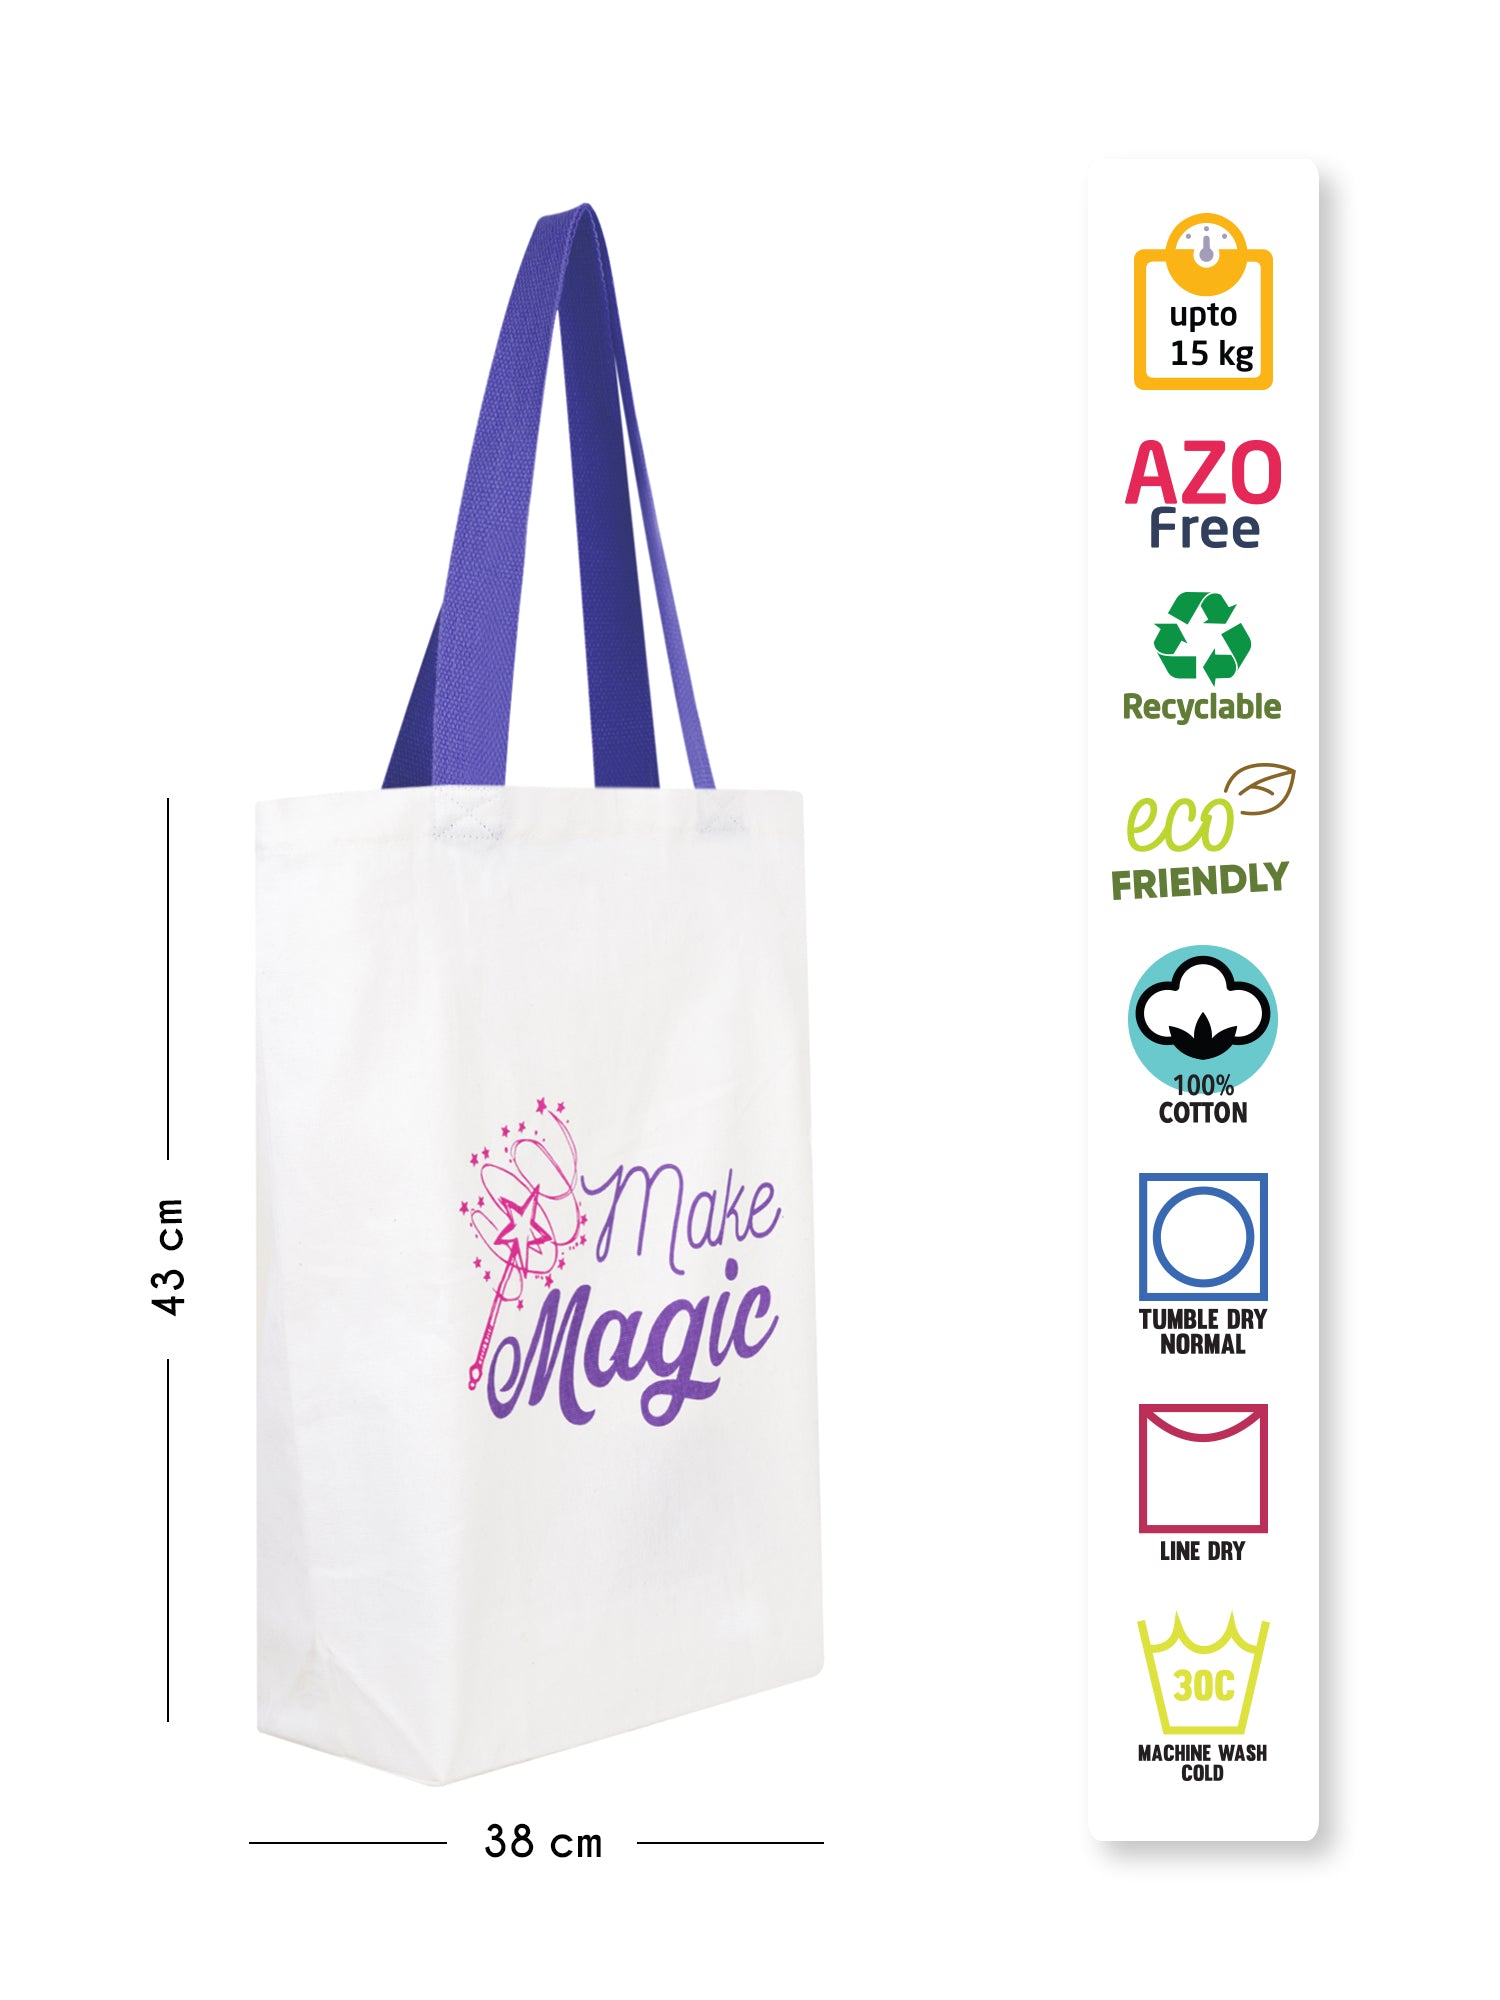 Make Magic - Tote Bag